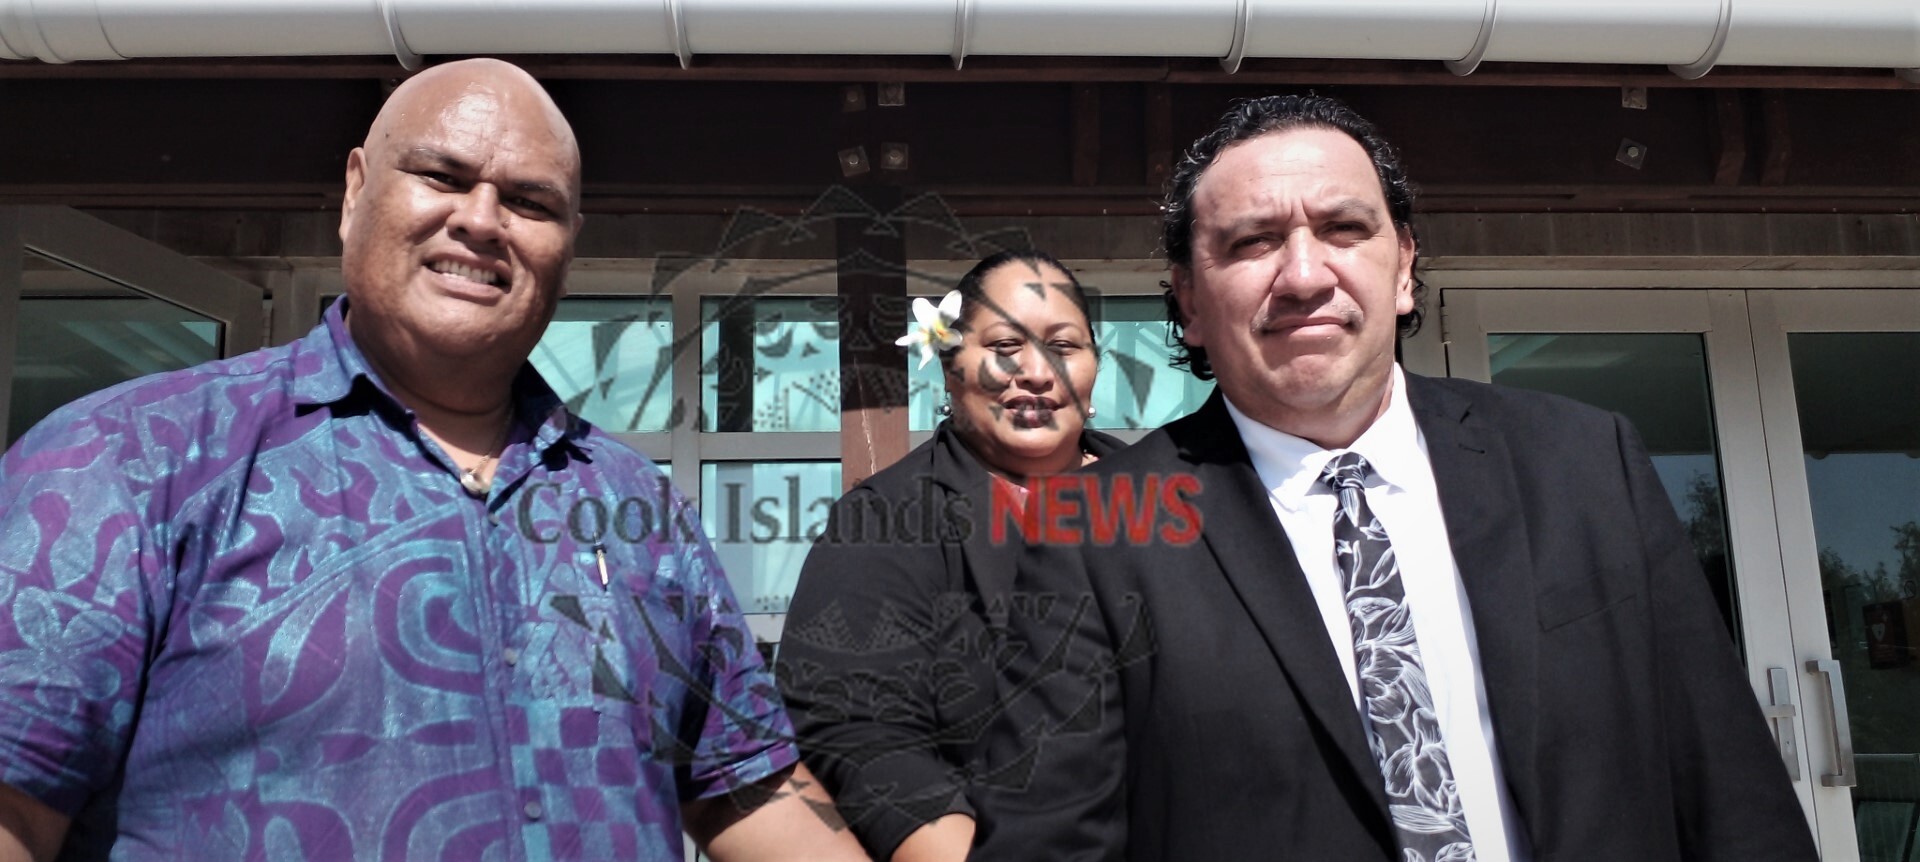 Trio found guilty in high profile corruption case